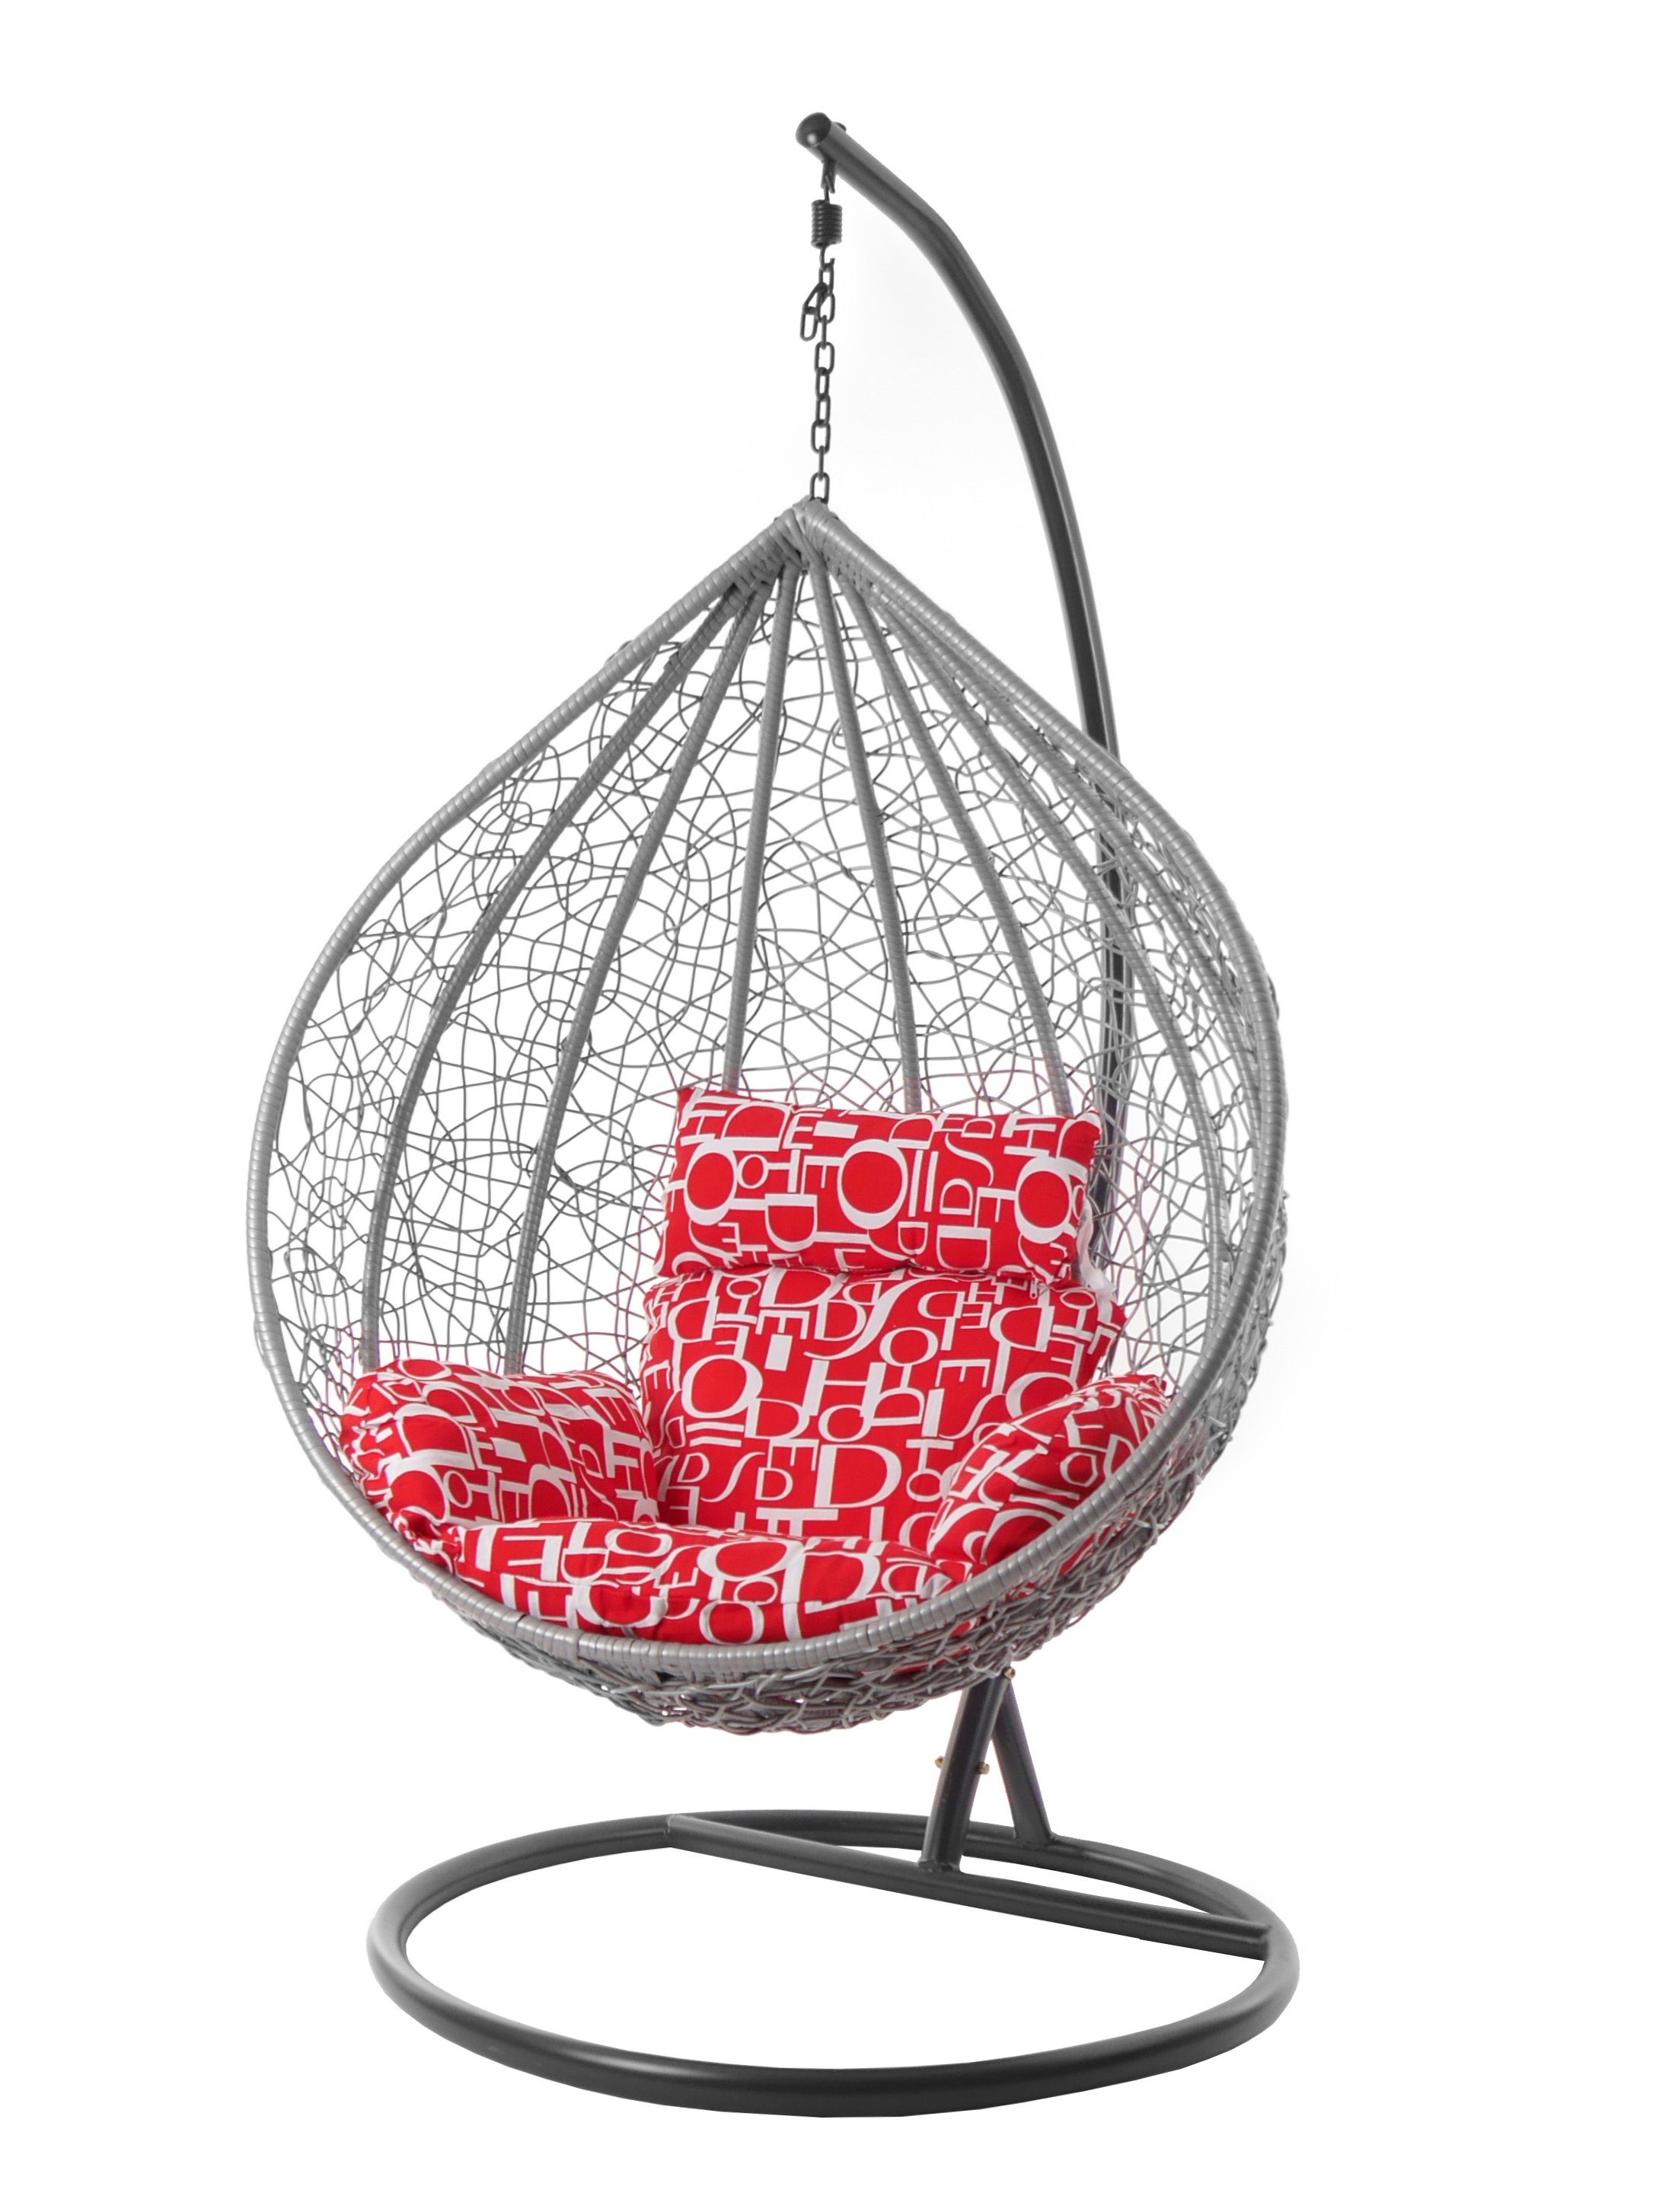 KIDEO (3100 MANACOR Swing red moderner hellgrauer Gestell Hängesessel Kissen, Hängesitz, hellgrau, und Loungesessel, Hängesessel Chair, letter) buchstabenmuster Schwebesessel Nest-Kissen inklusive